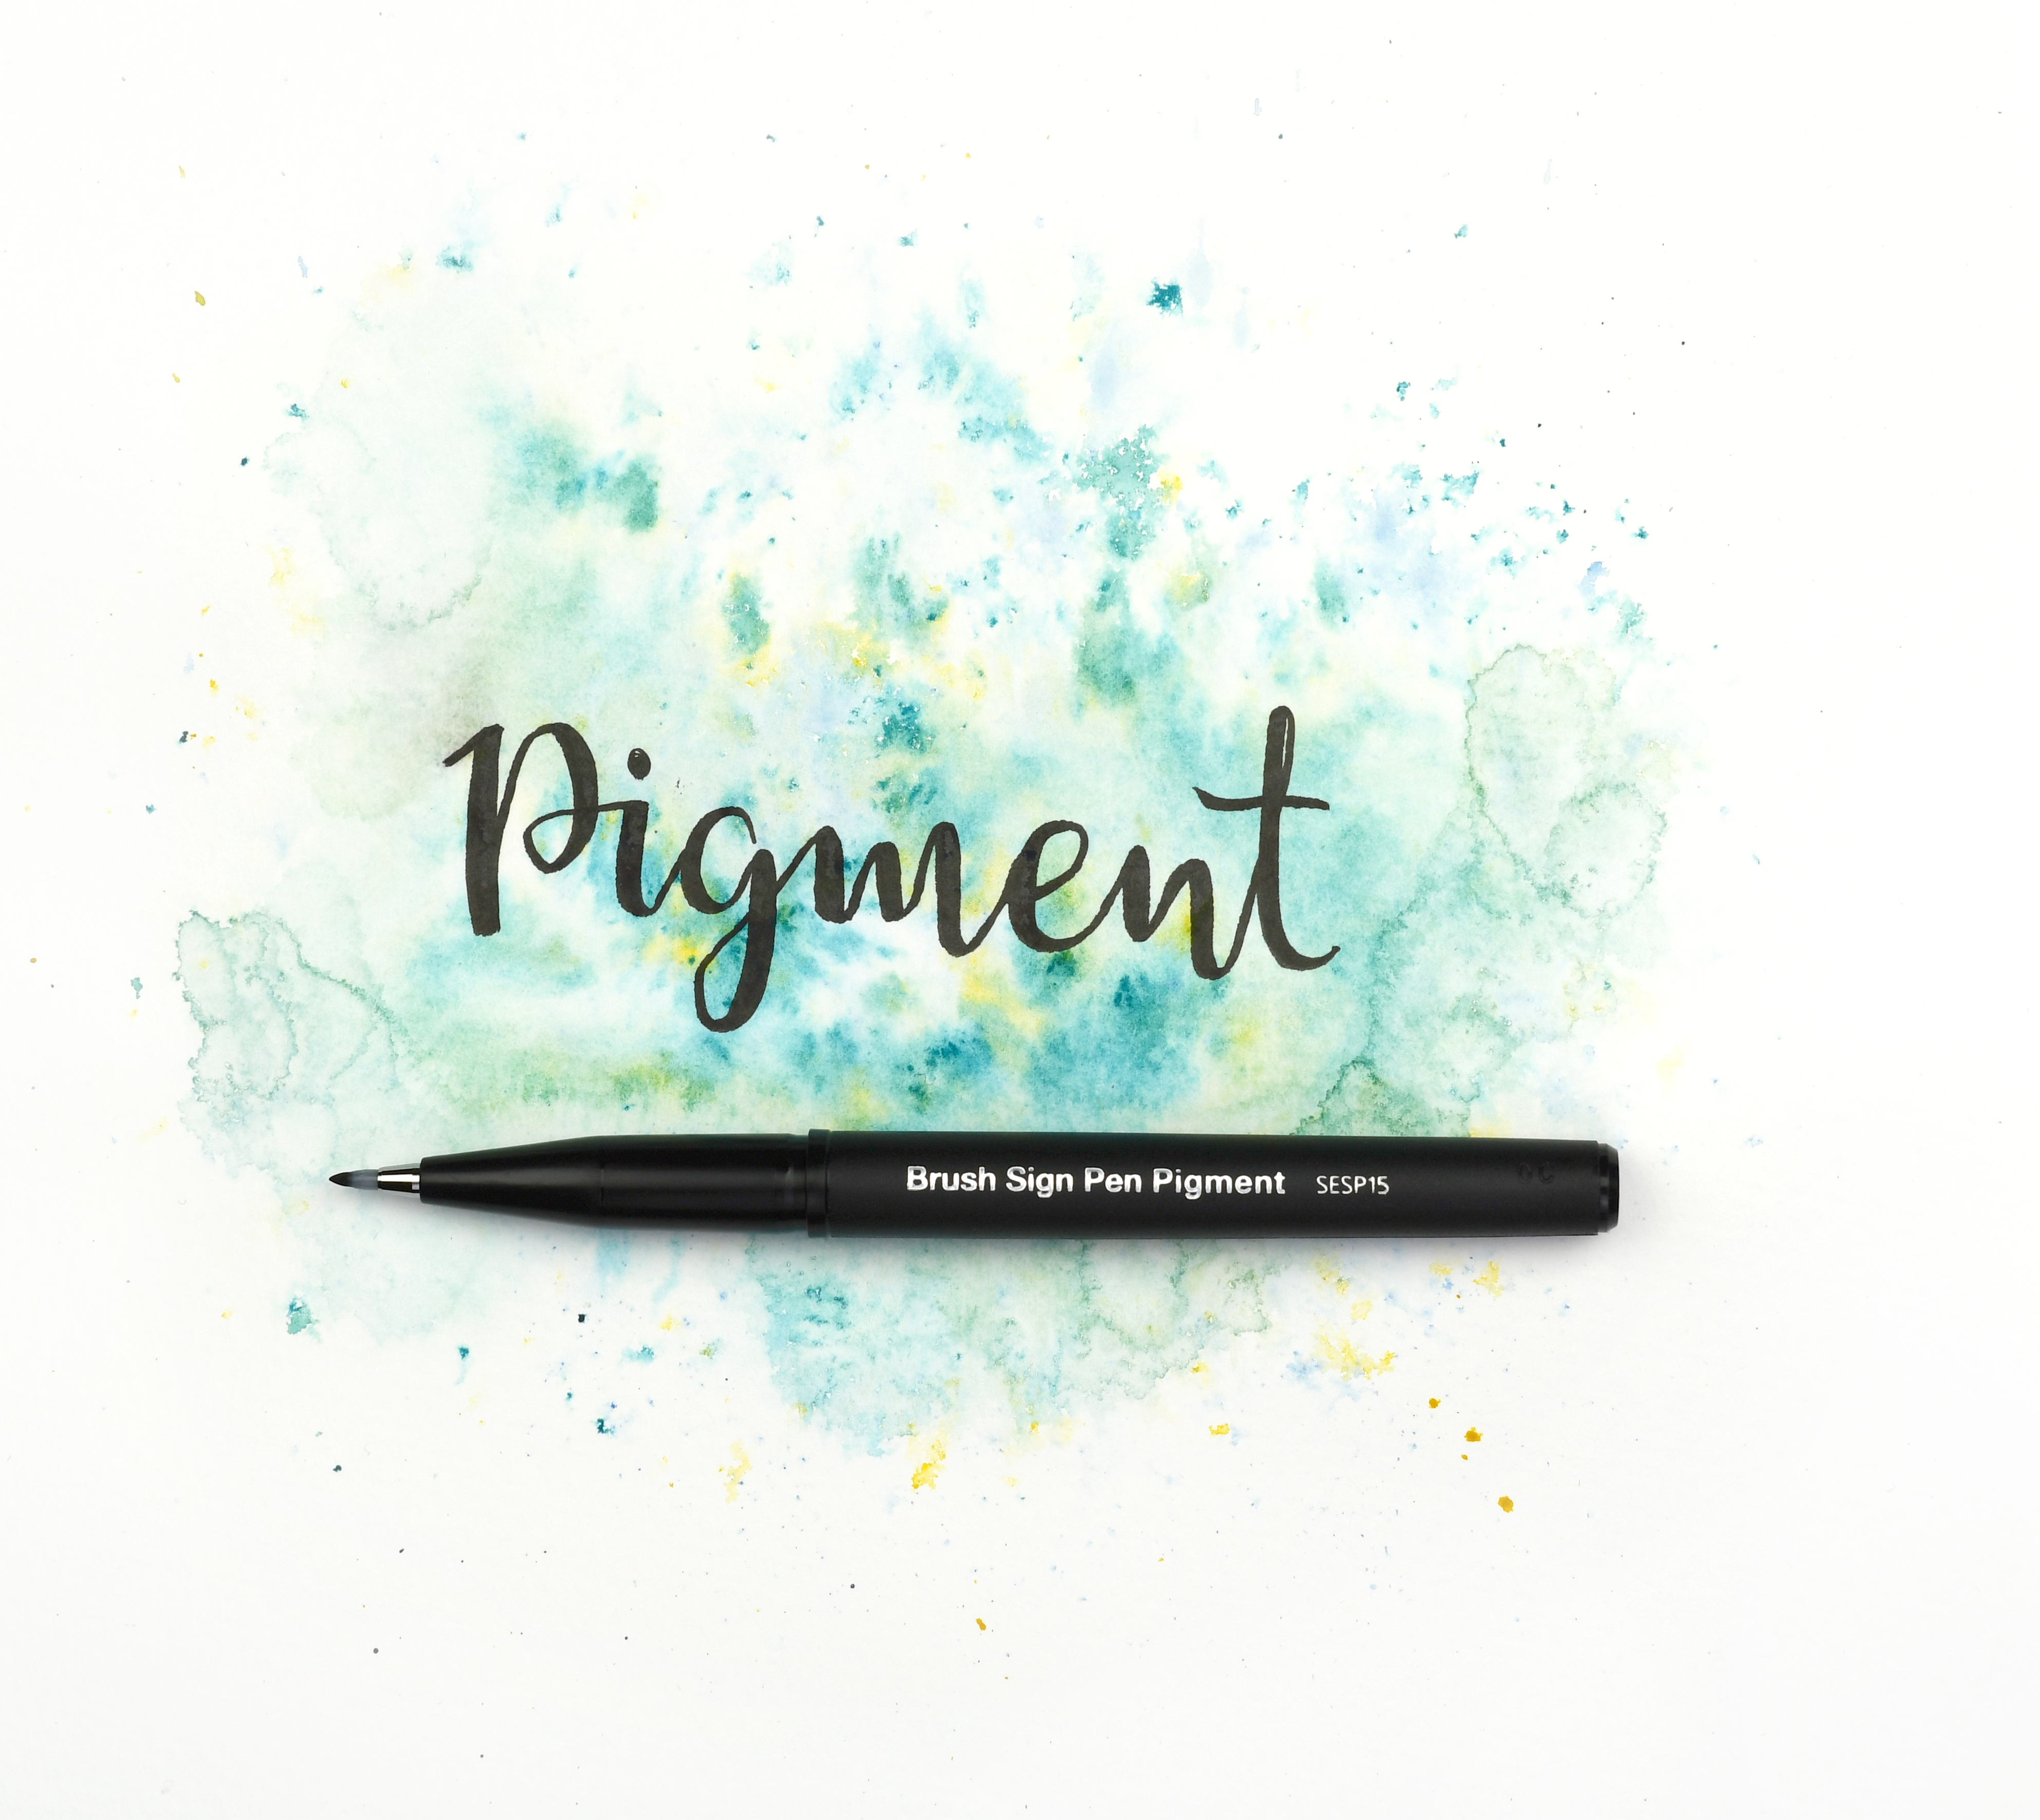 Brush Sign Pen Pigment - Black Pigment Edition